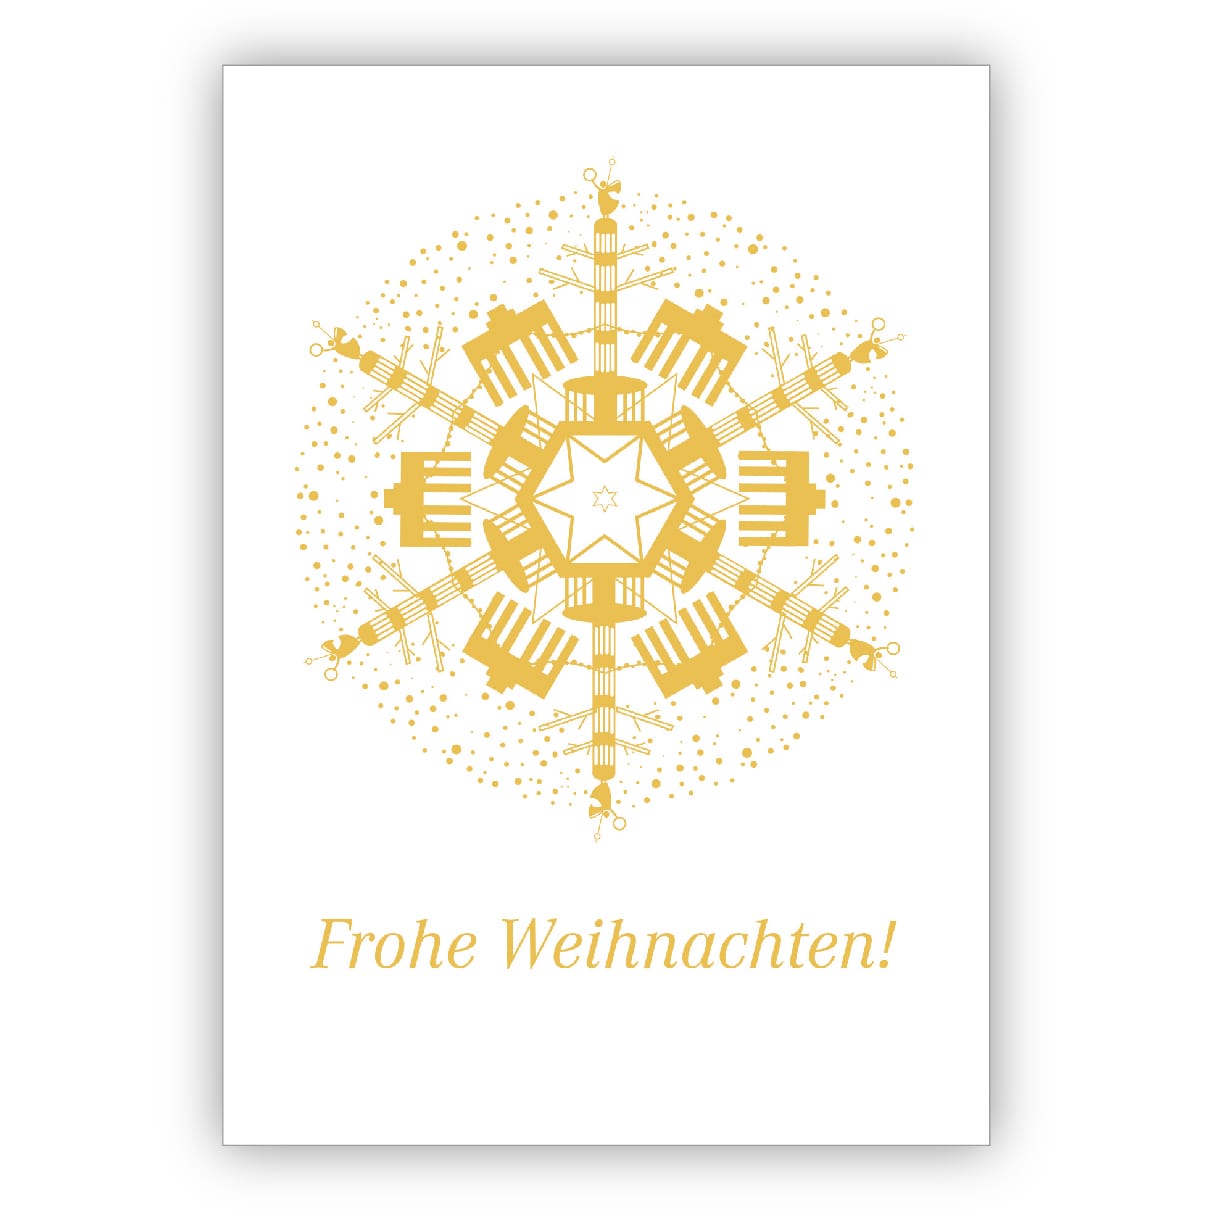 Tolle Berliner Weihnachtskarte mit Brandenburger Tor und Siegessäule auf weiß: Frohe Weihnachten